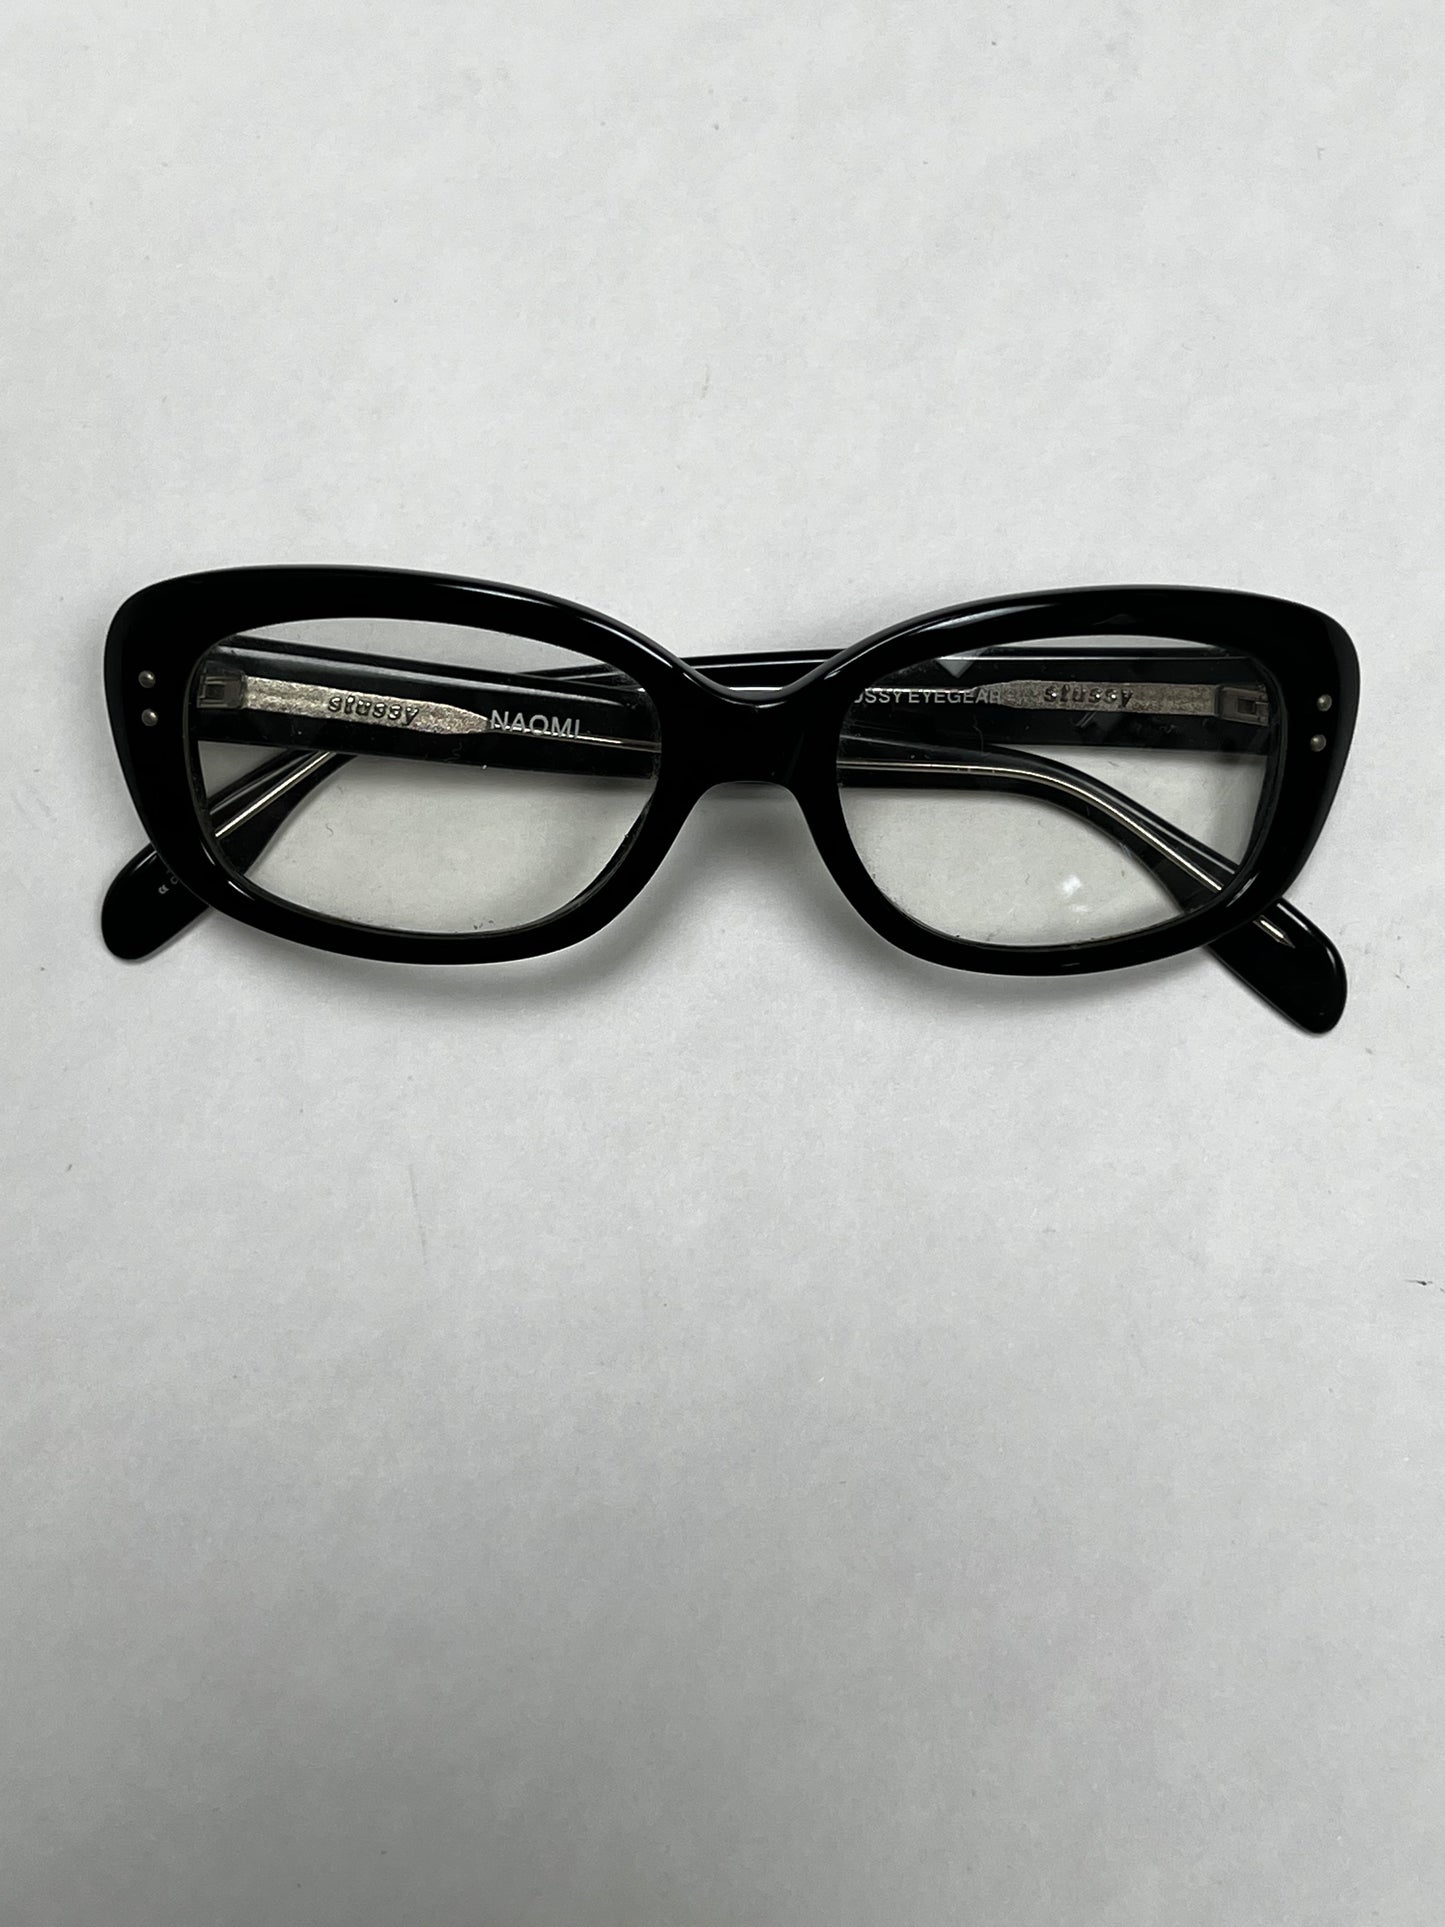 Stüssy “Naomi” eyeglasses